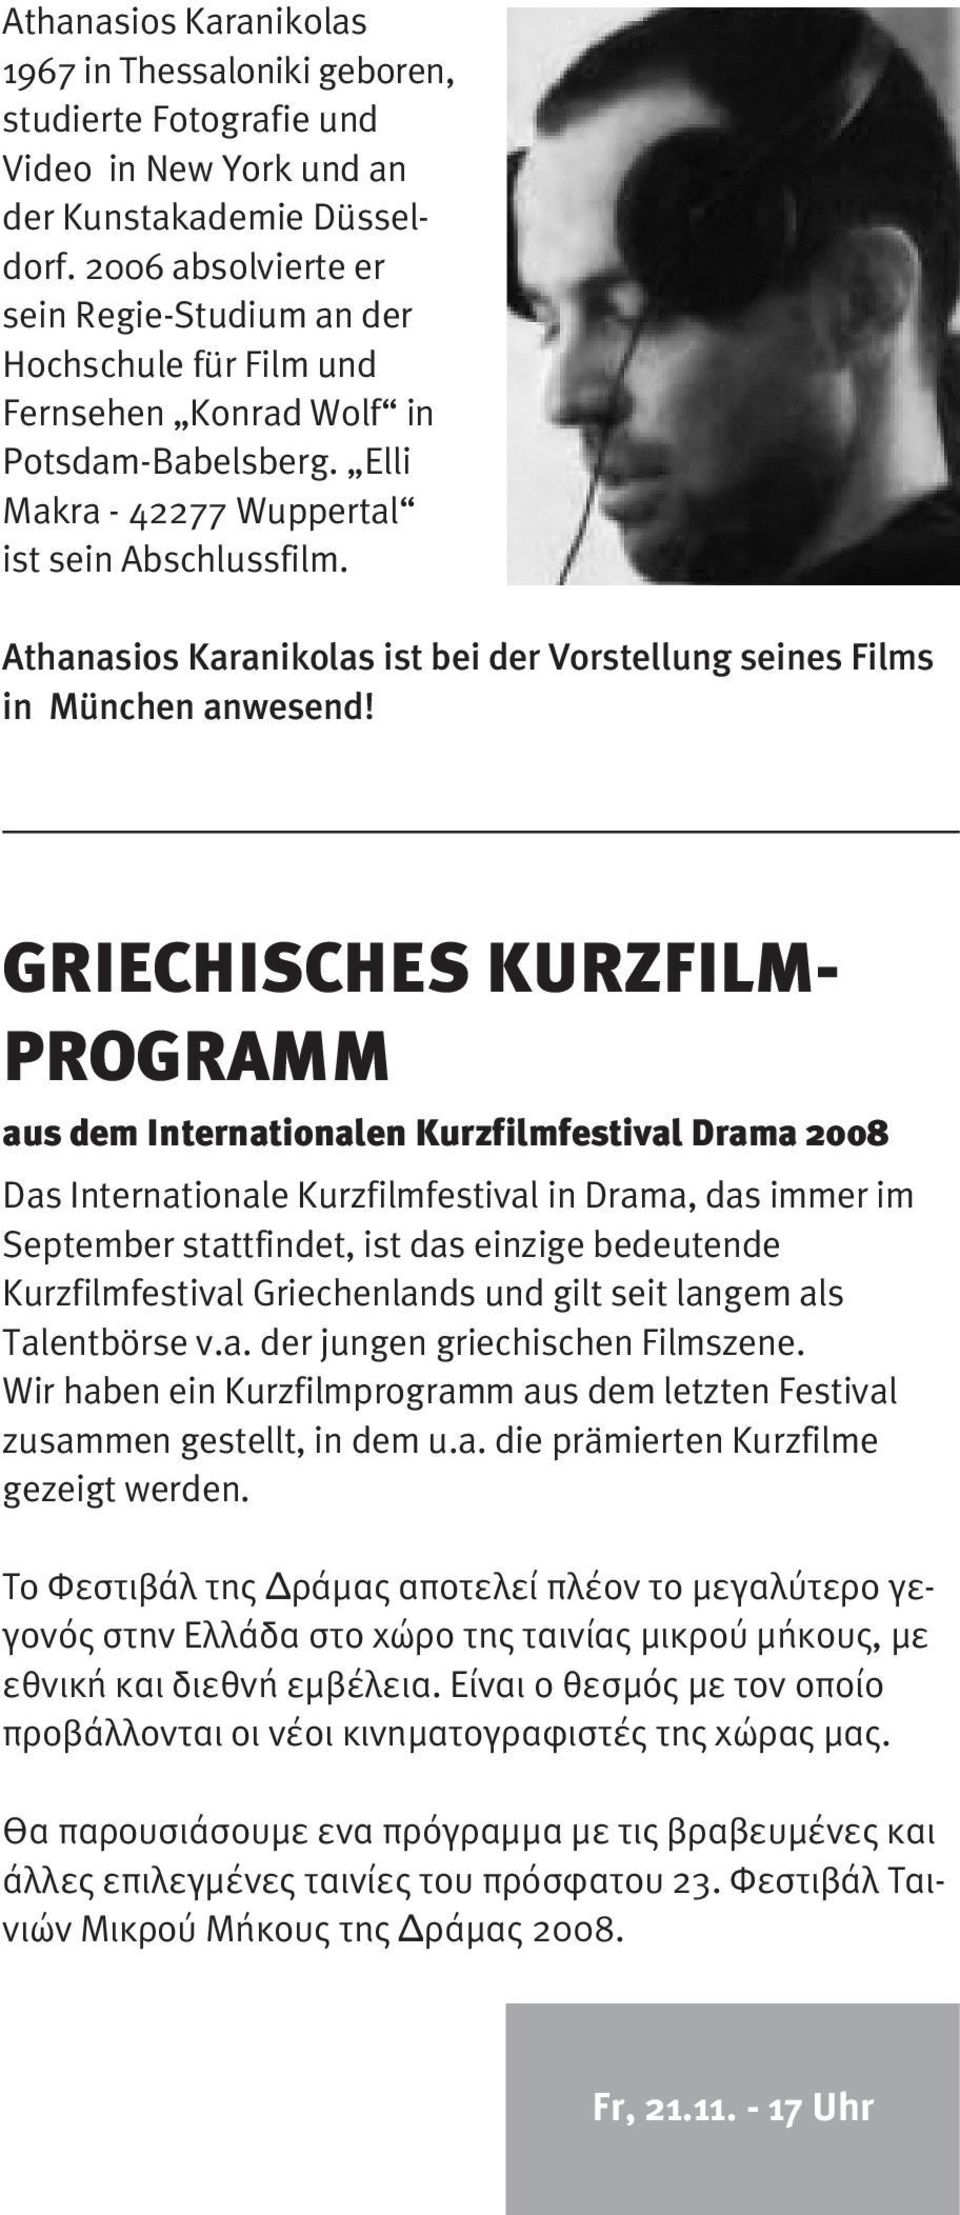 Athanasios Karanikolas ist bei der Vorstellung seines Films in München anwesend!